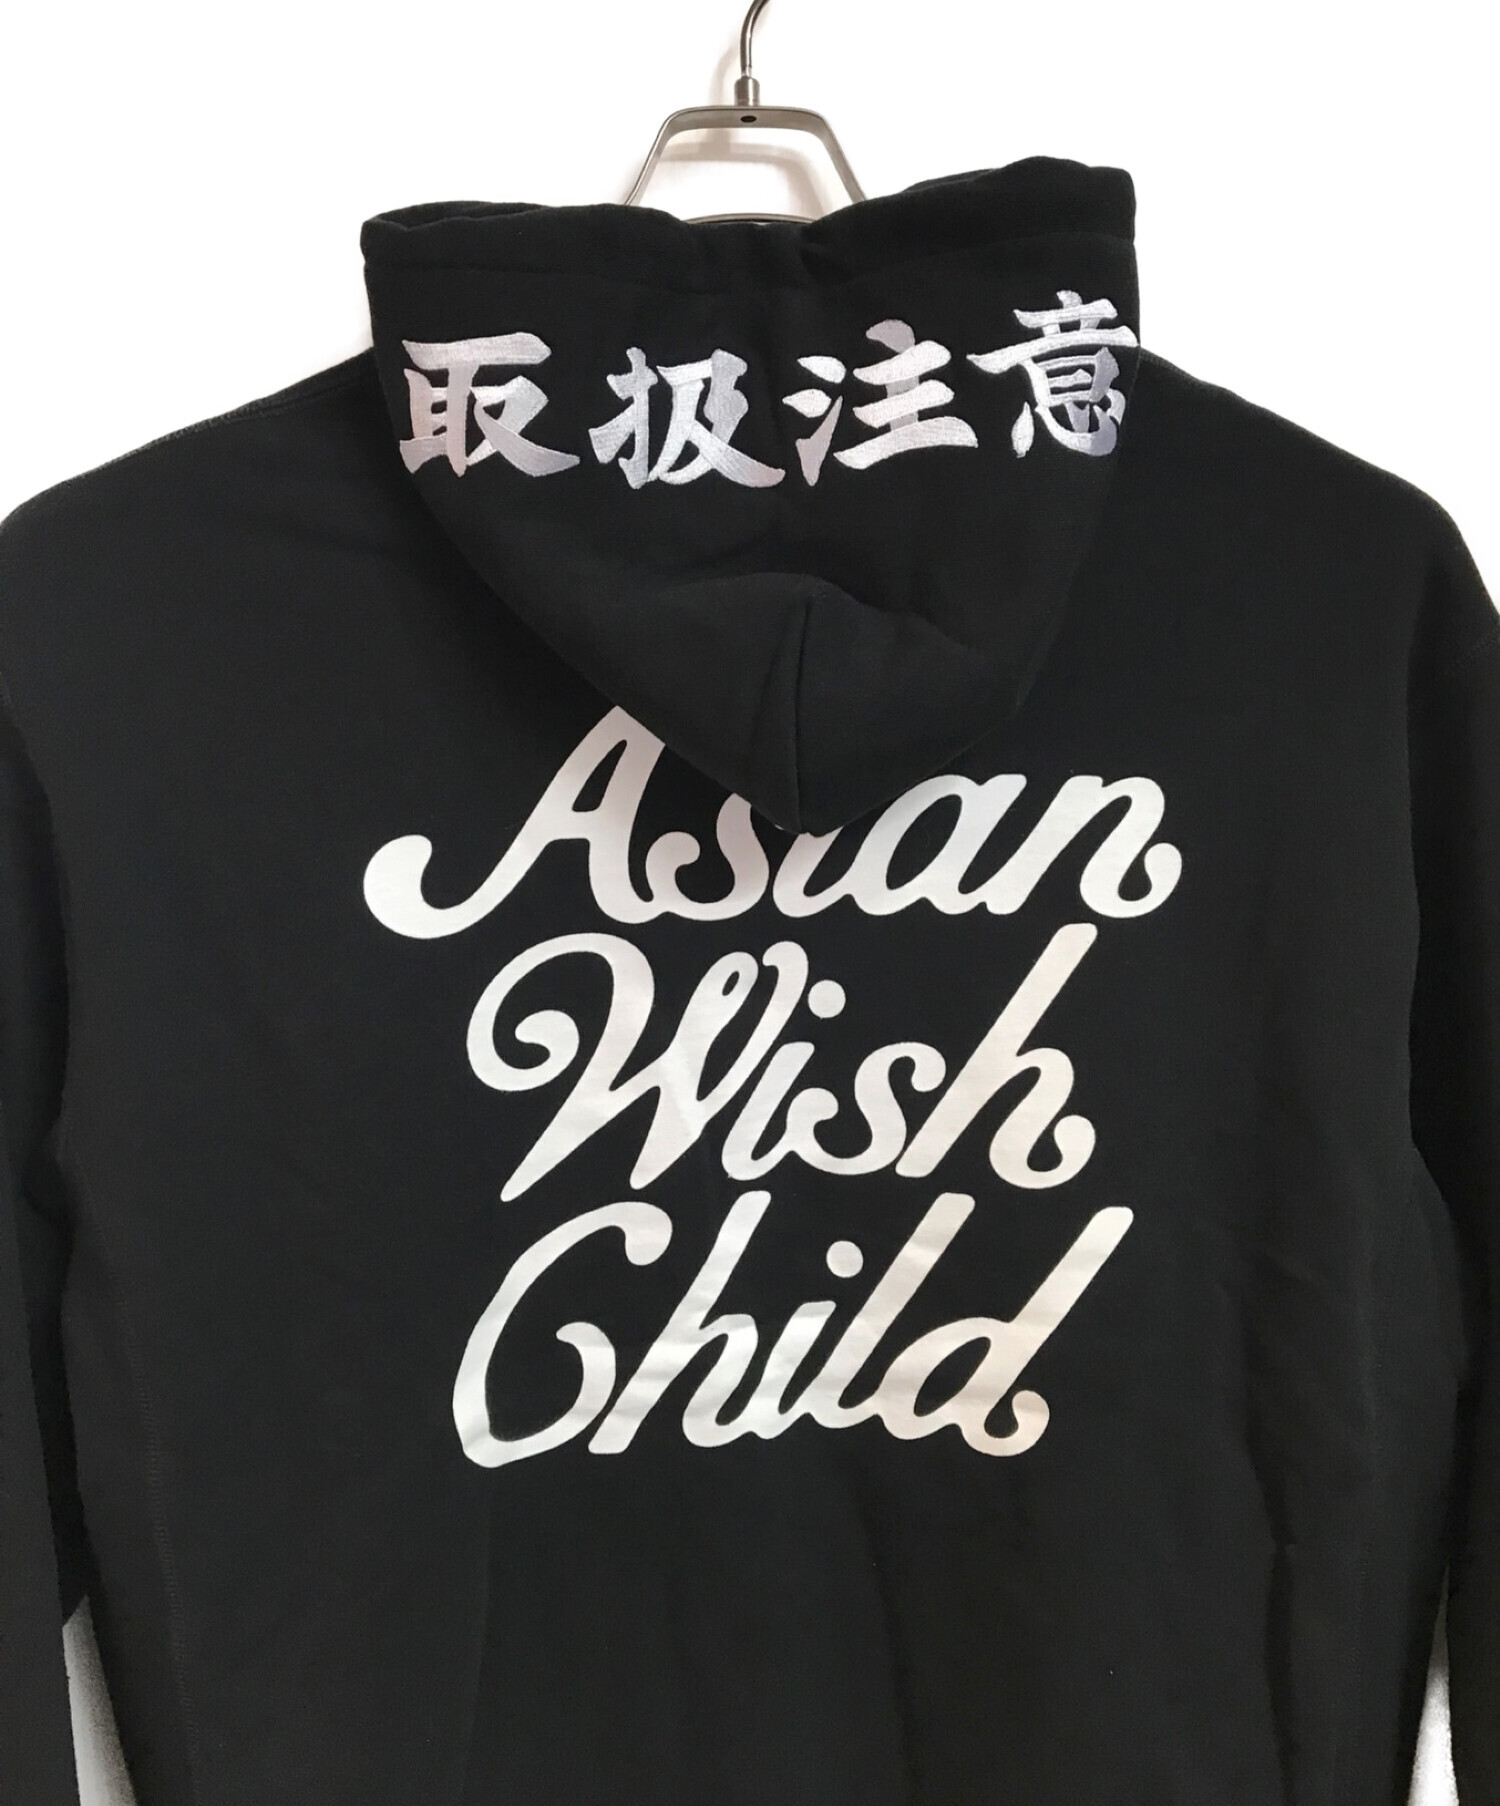 買いました Awich Asian Wish Child黒Tシャツ・新品 - トップス